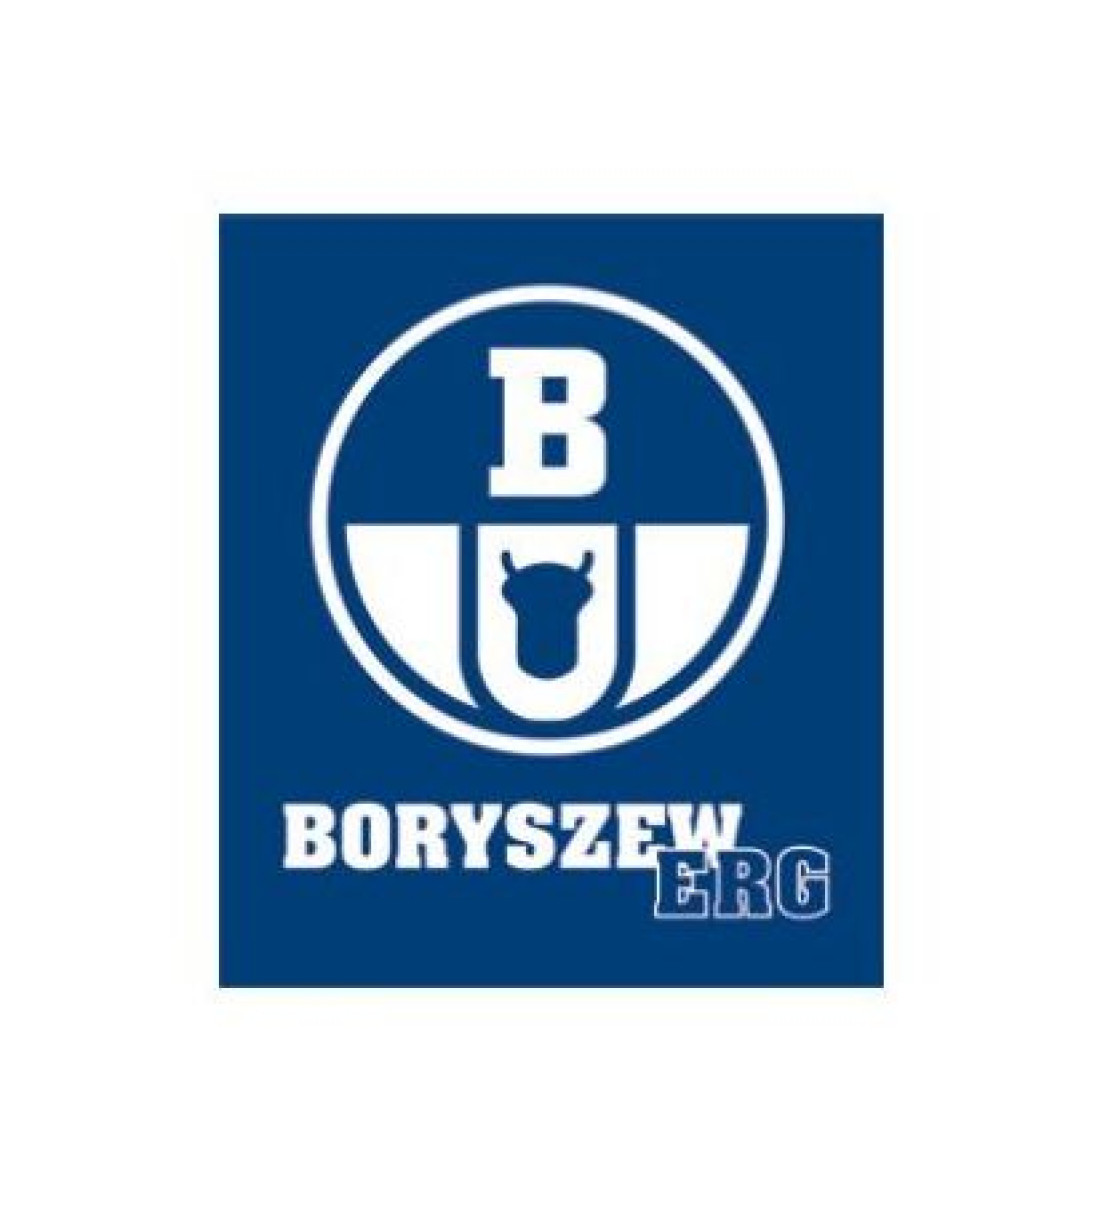 Boryszew ERG z patentem